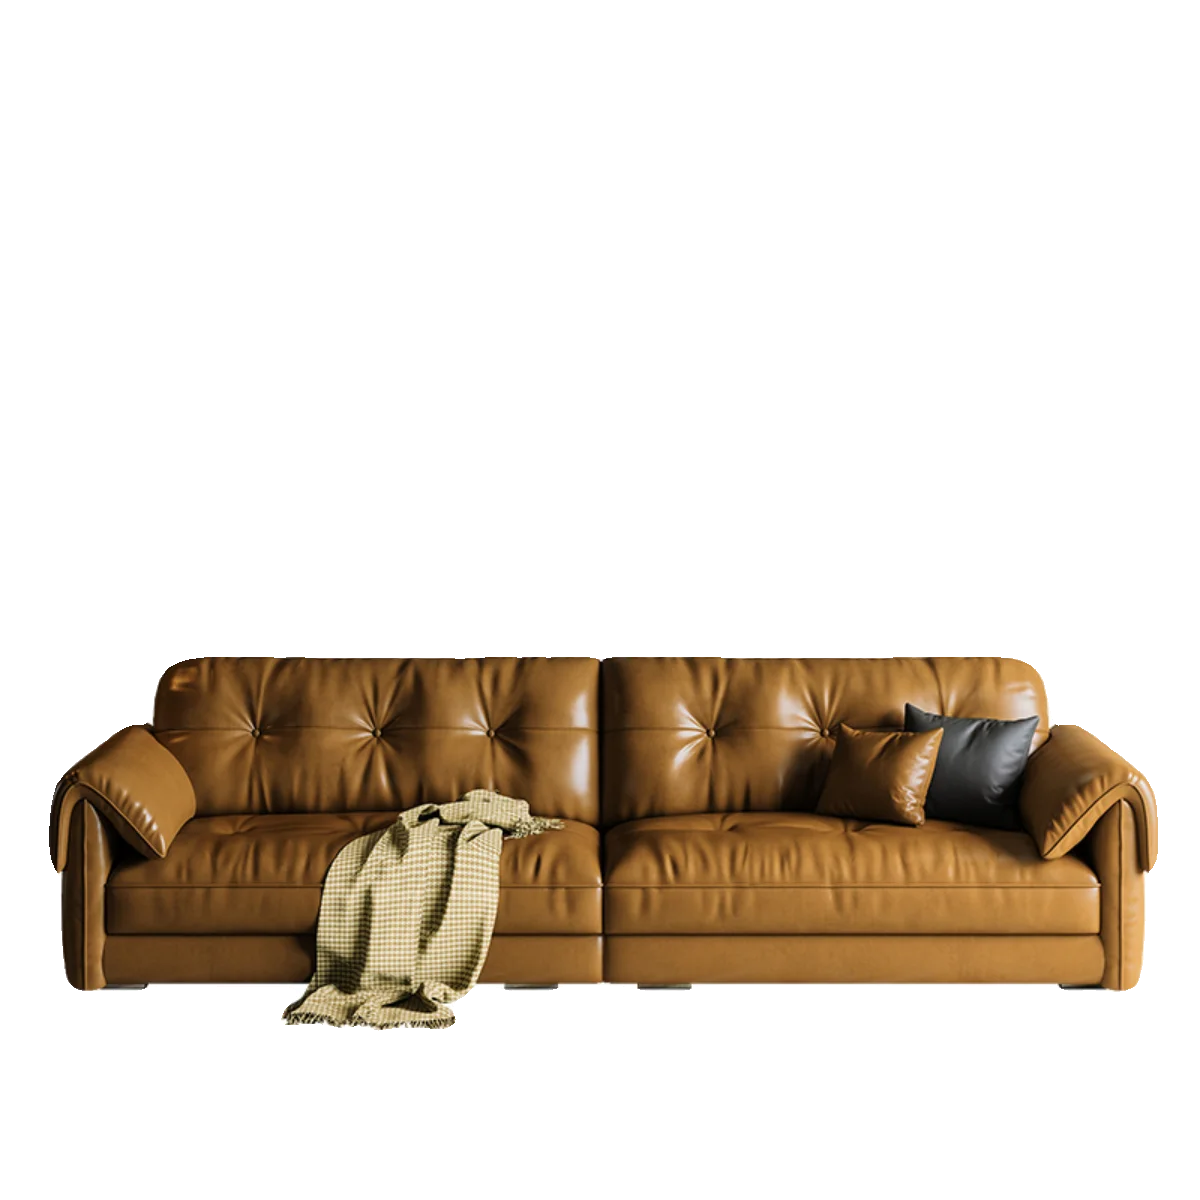 

Кожаный диван с масляным воском, прямое сочетание в французском ретро-стиле для большой и маленькой квартиры, гостиной